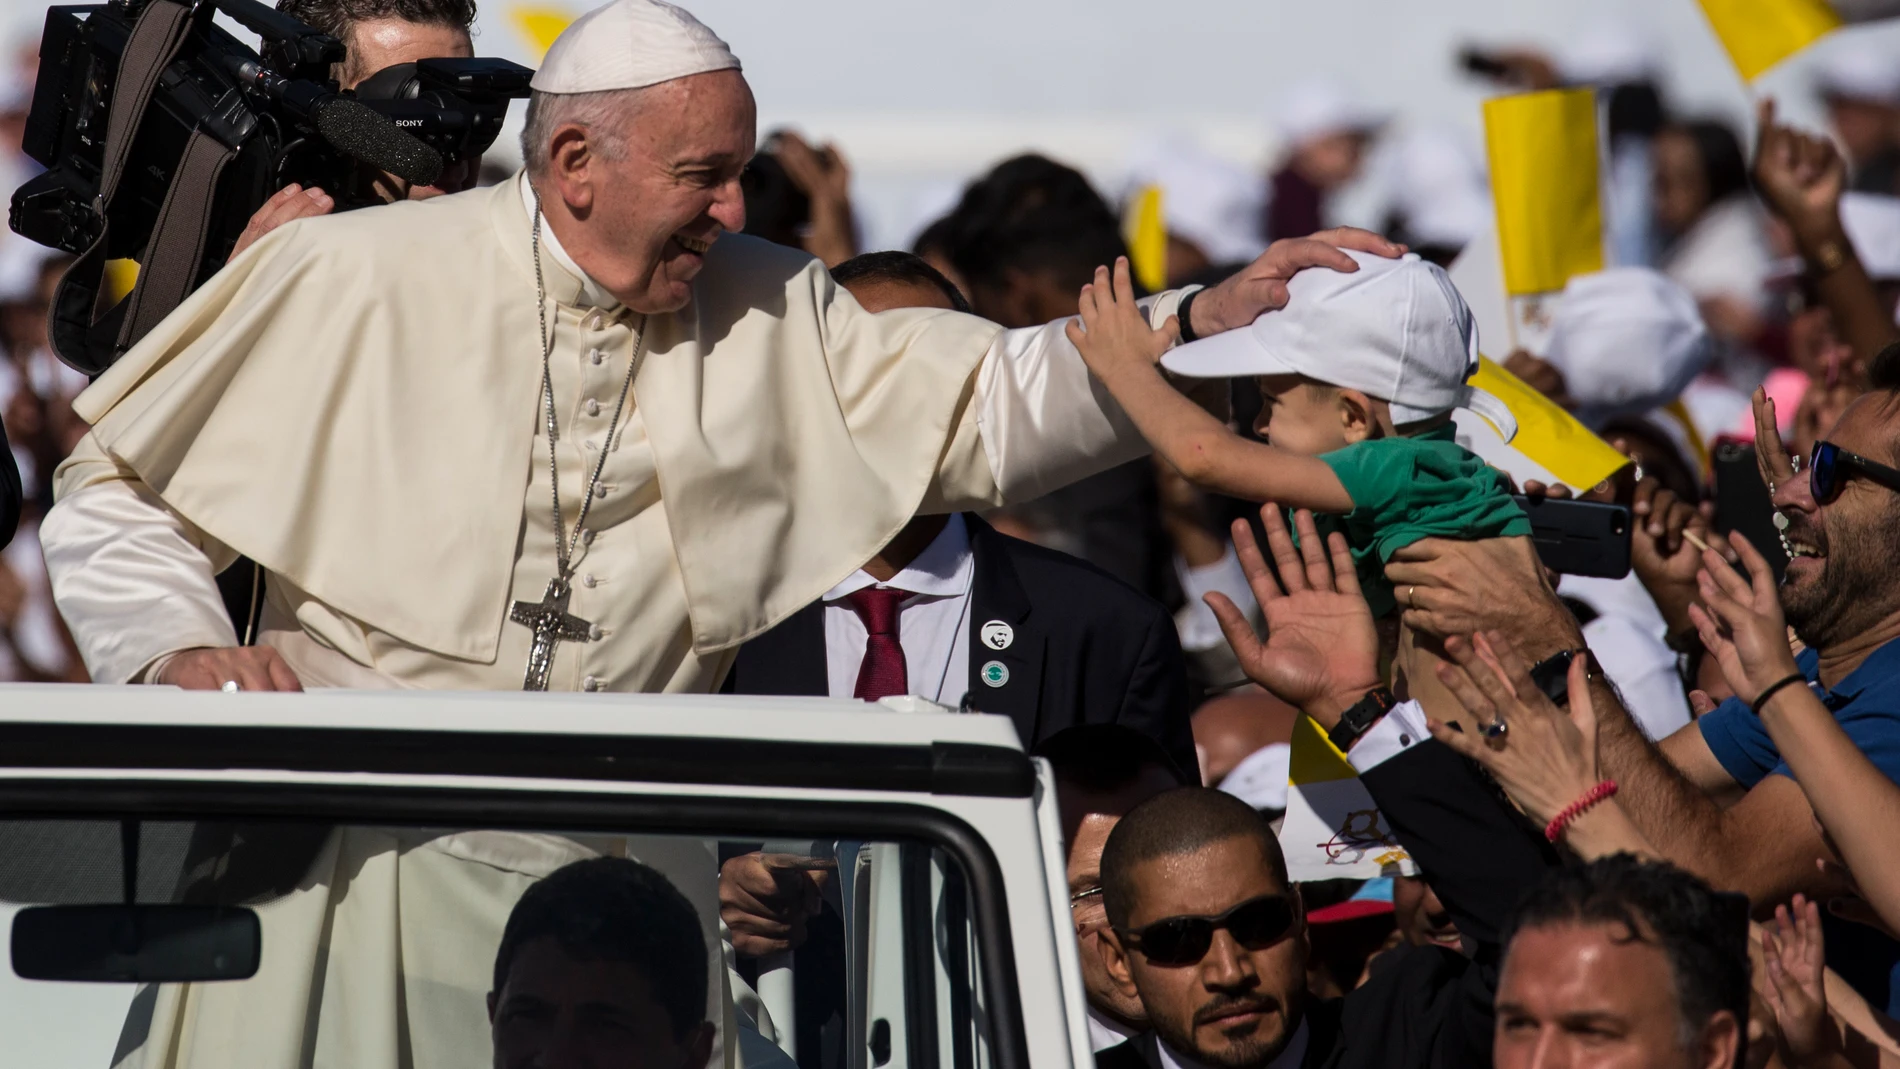 El Papa Francisco, durante su visita a los Emiratos Árabes